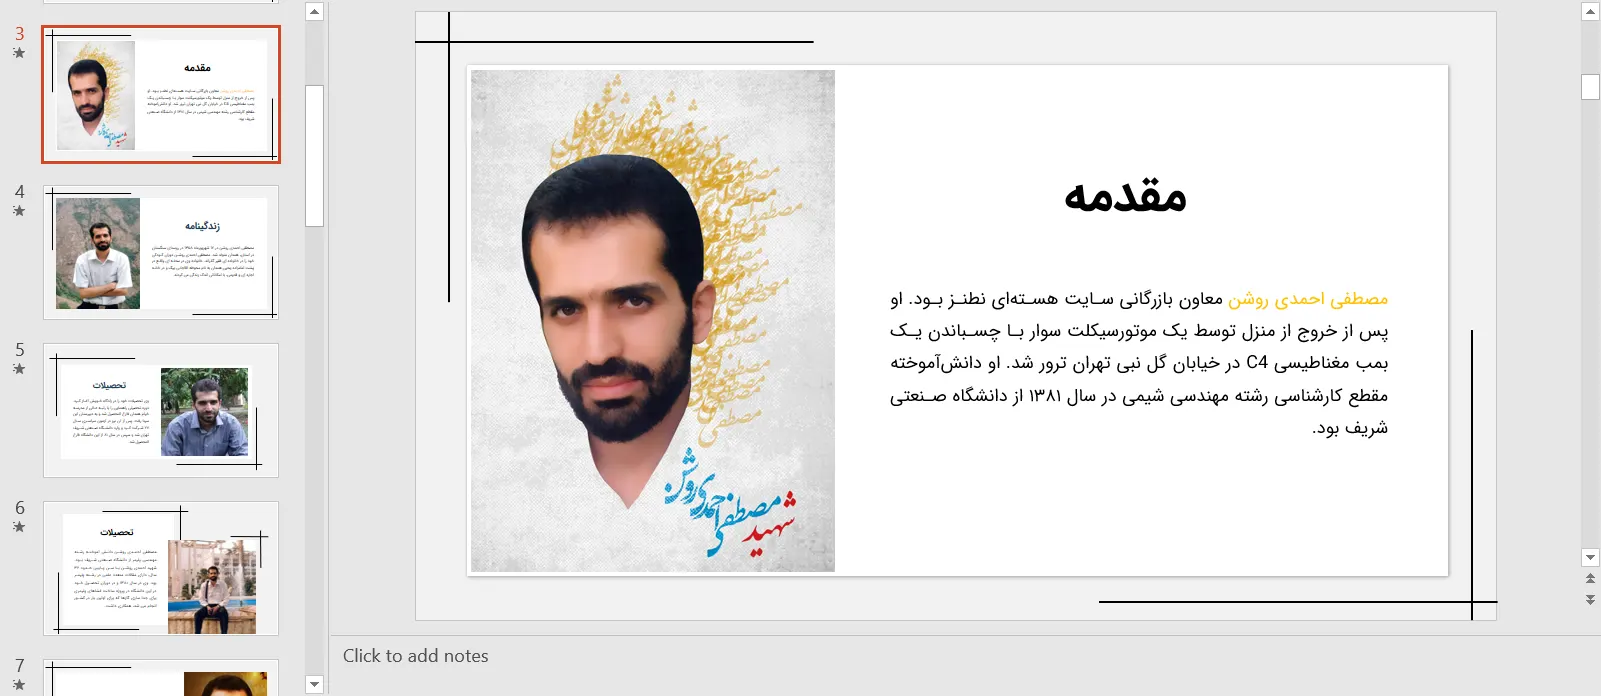 پاورپوینت شهید مصطفی احمدی روشن